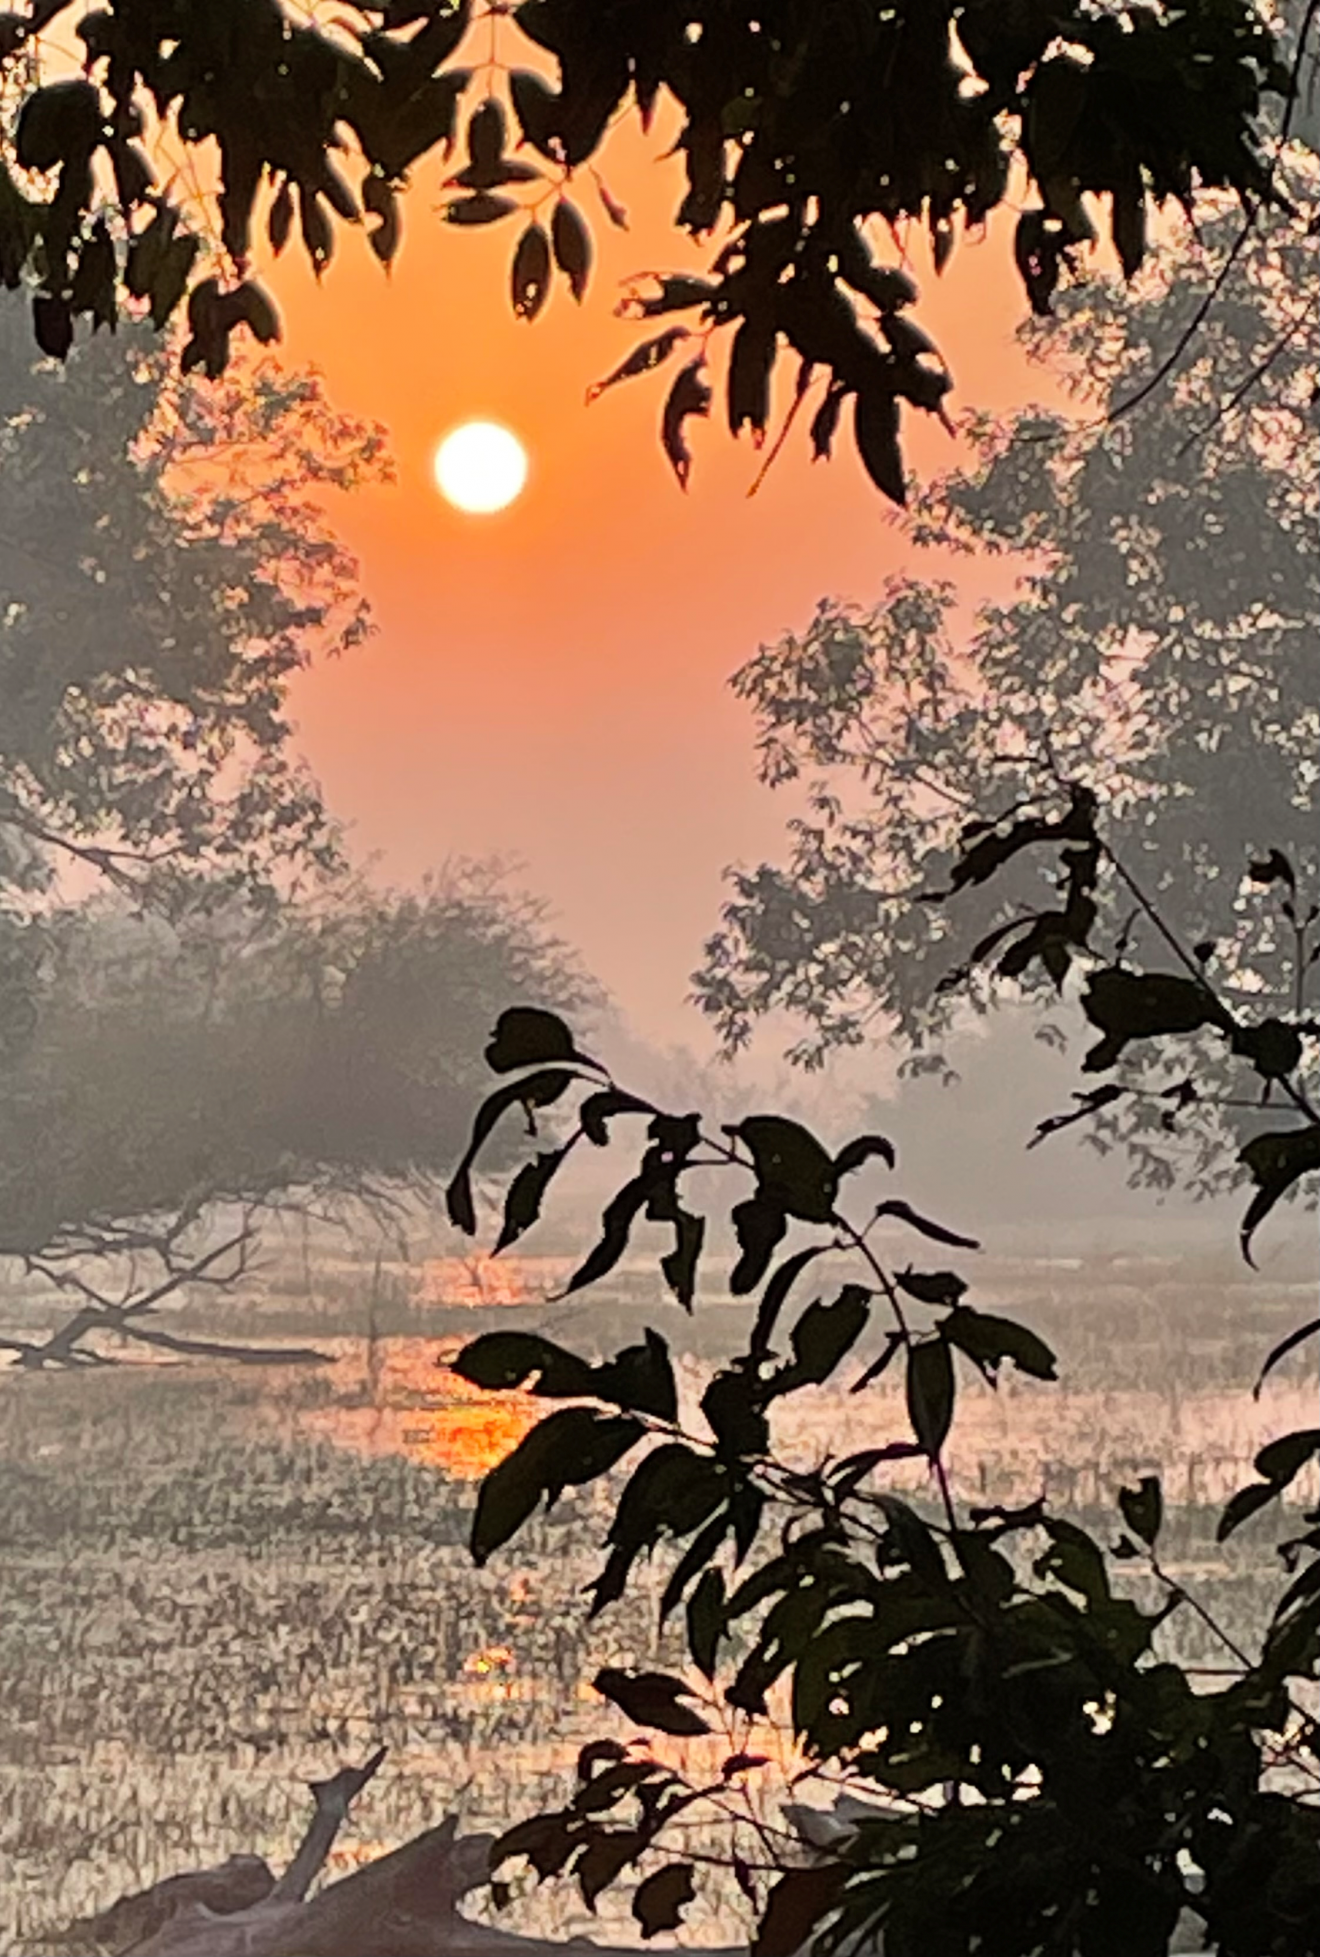 India sunrise photo ©Andrew Rowdon